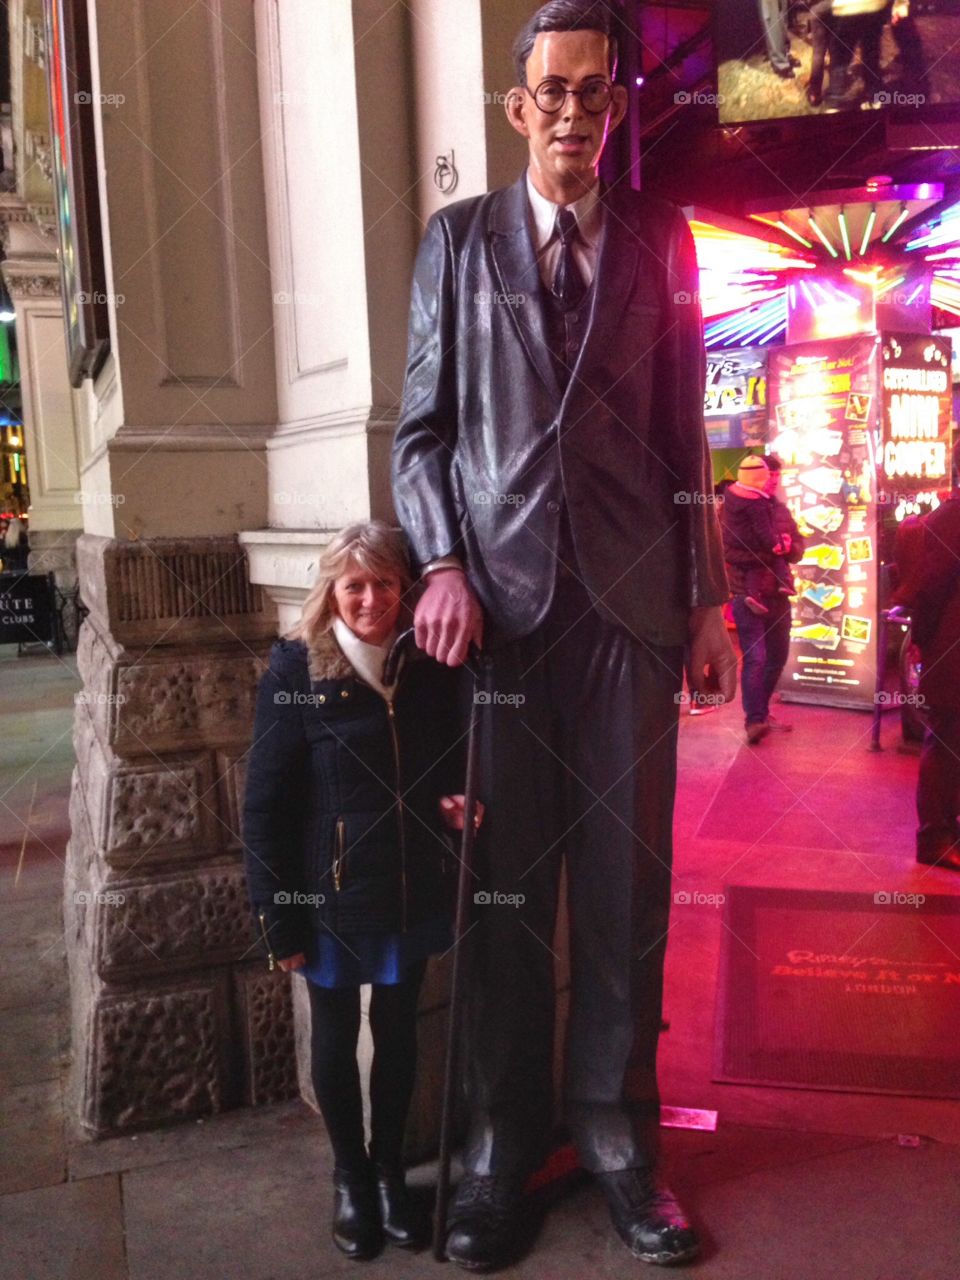 Worlds tallest man